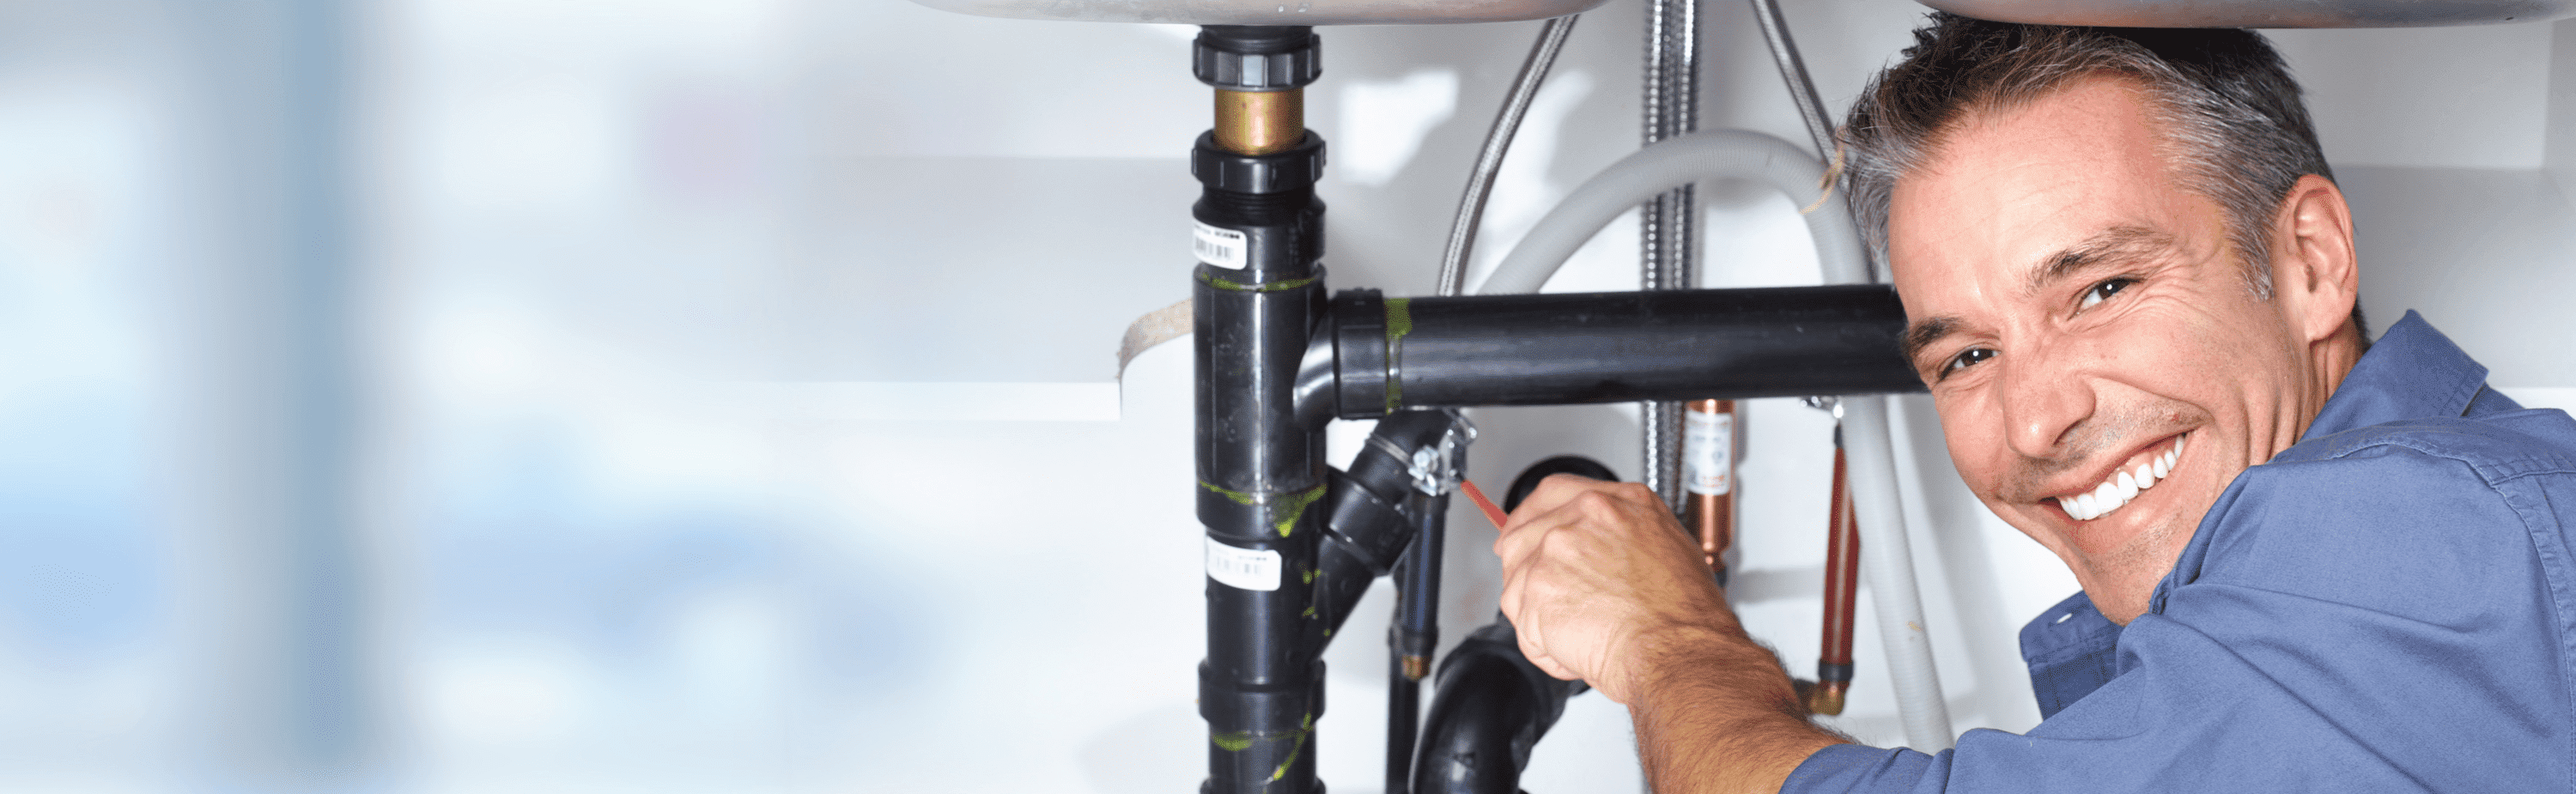 Plumber repairing pipes under sink